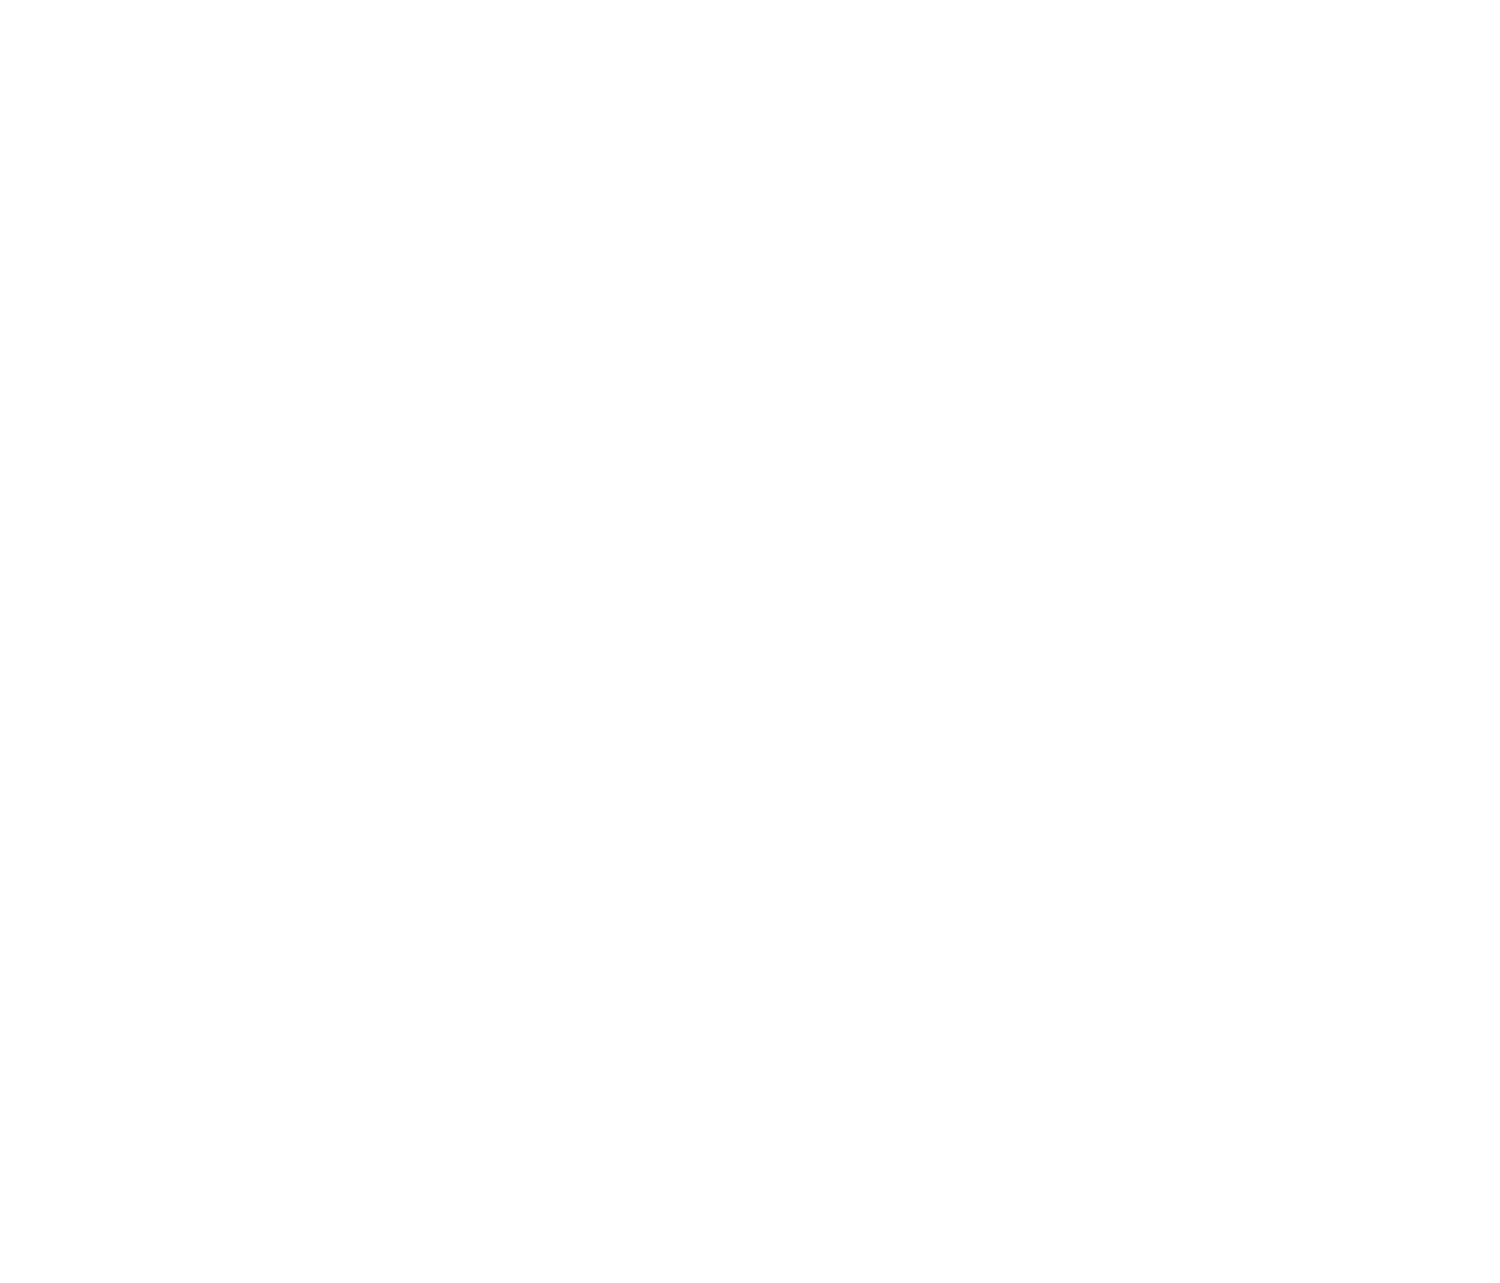 KLS Accounting